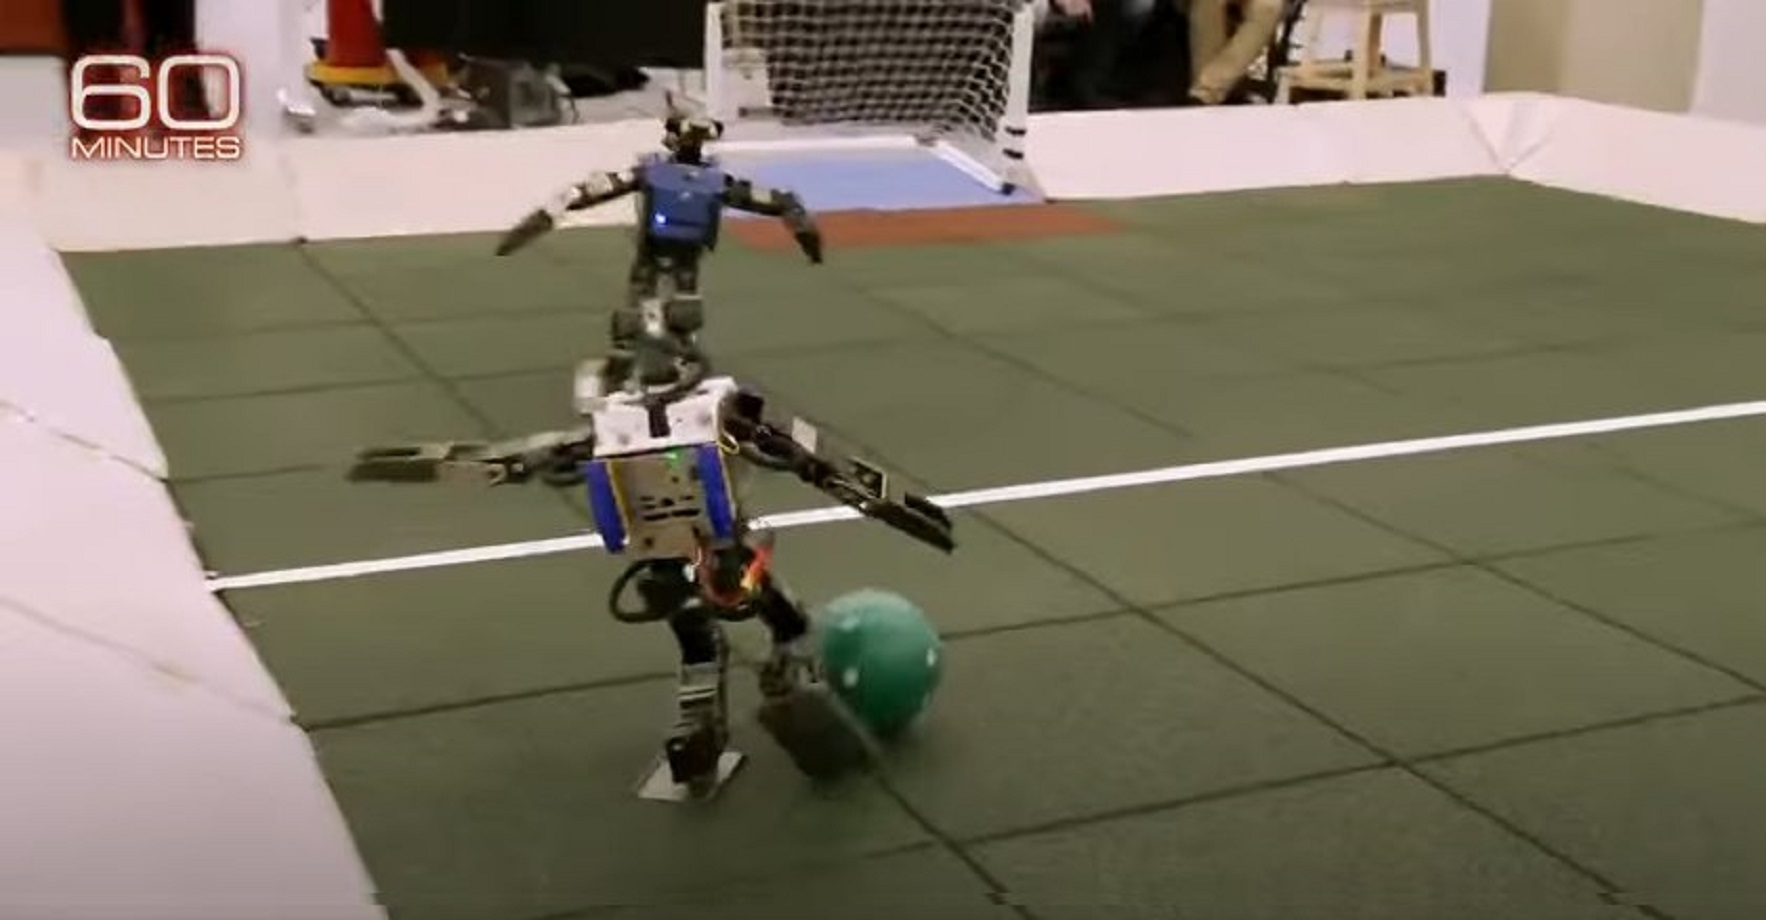 roboty grające w piłkę (źródło: 60 Minutes, Youtube)